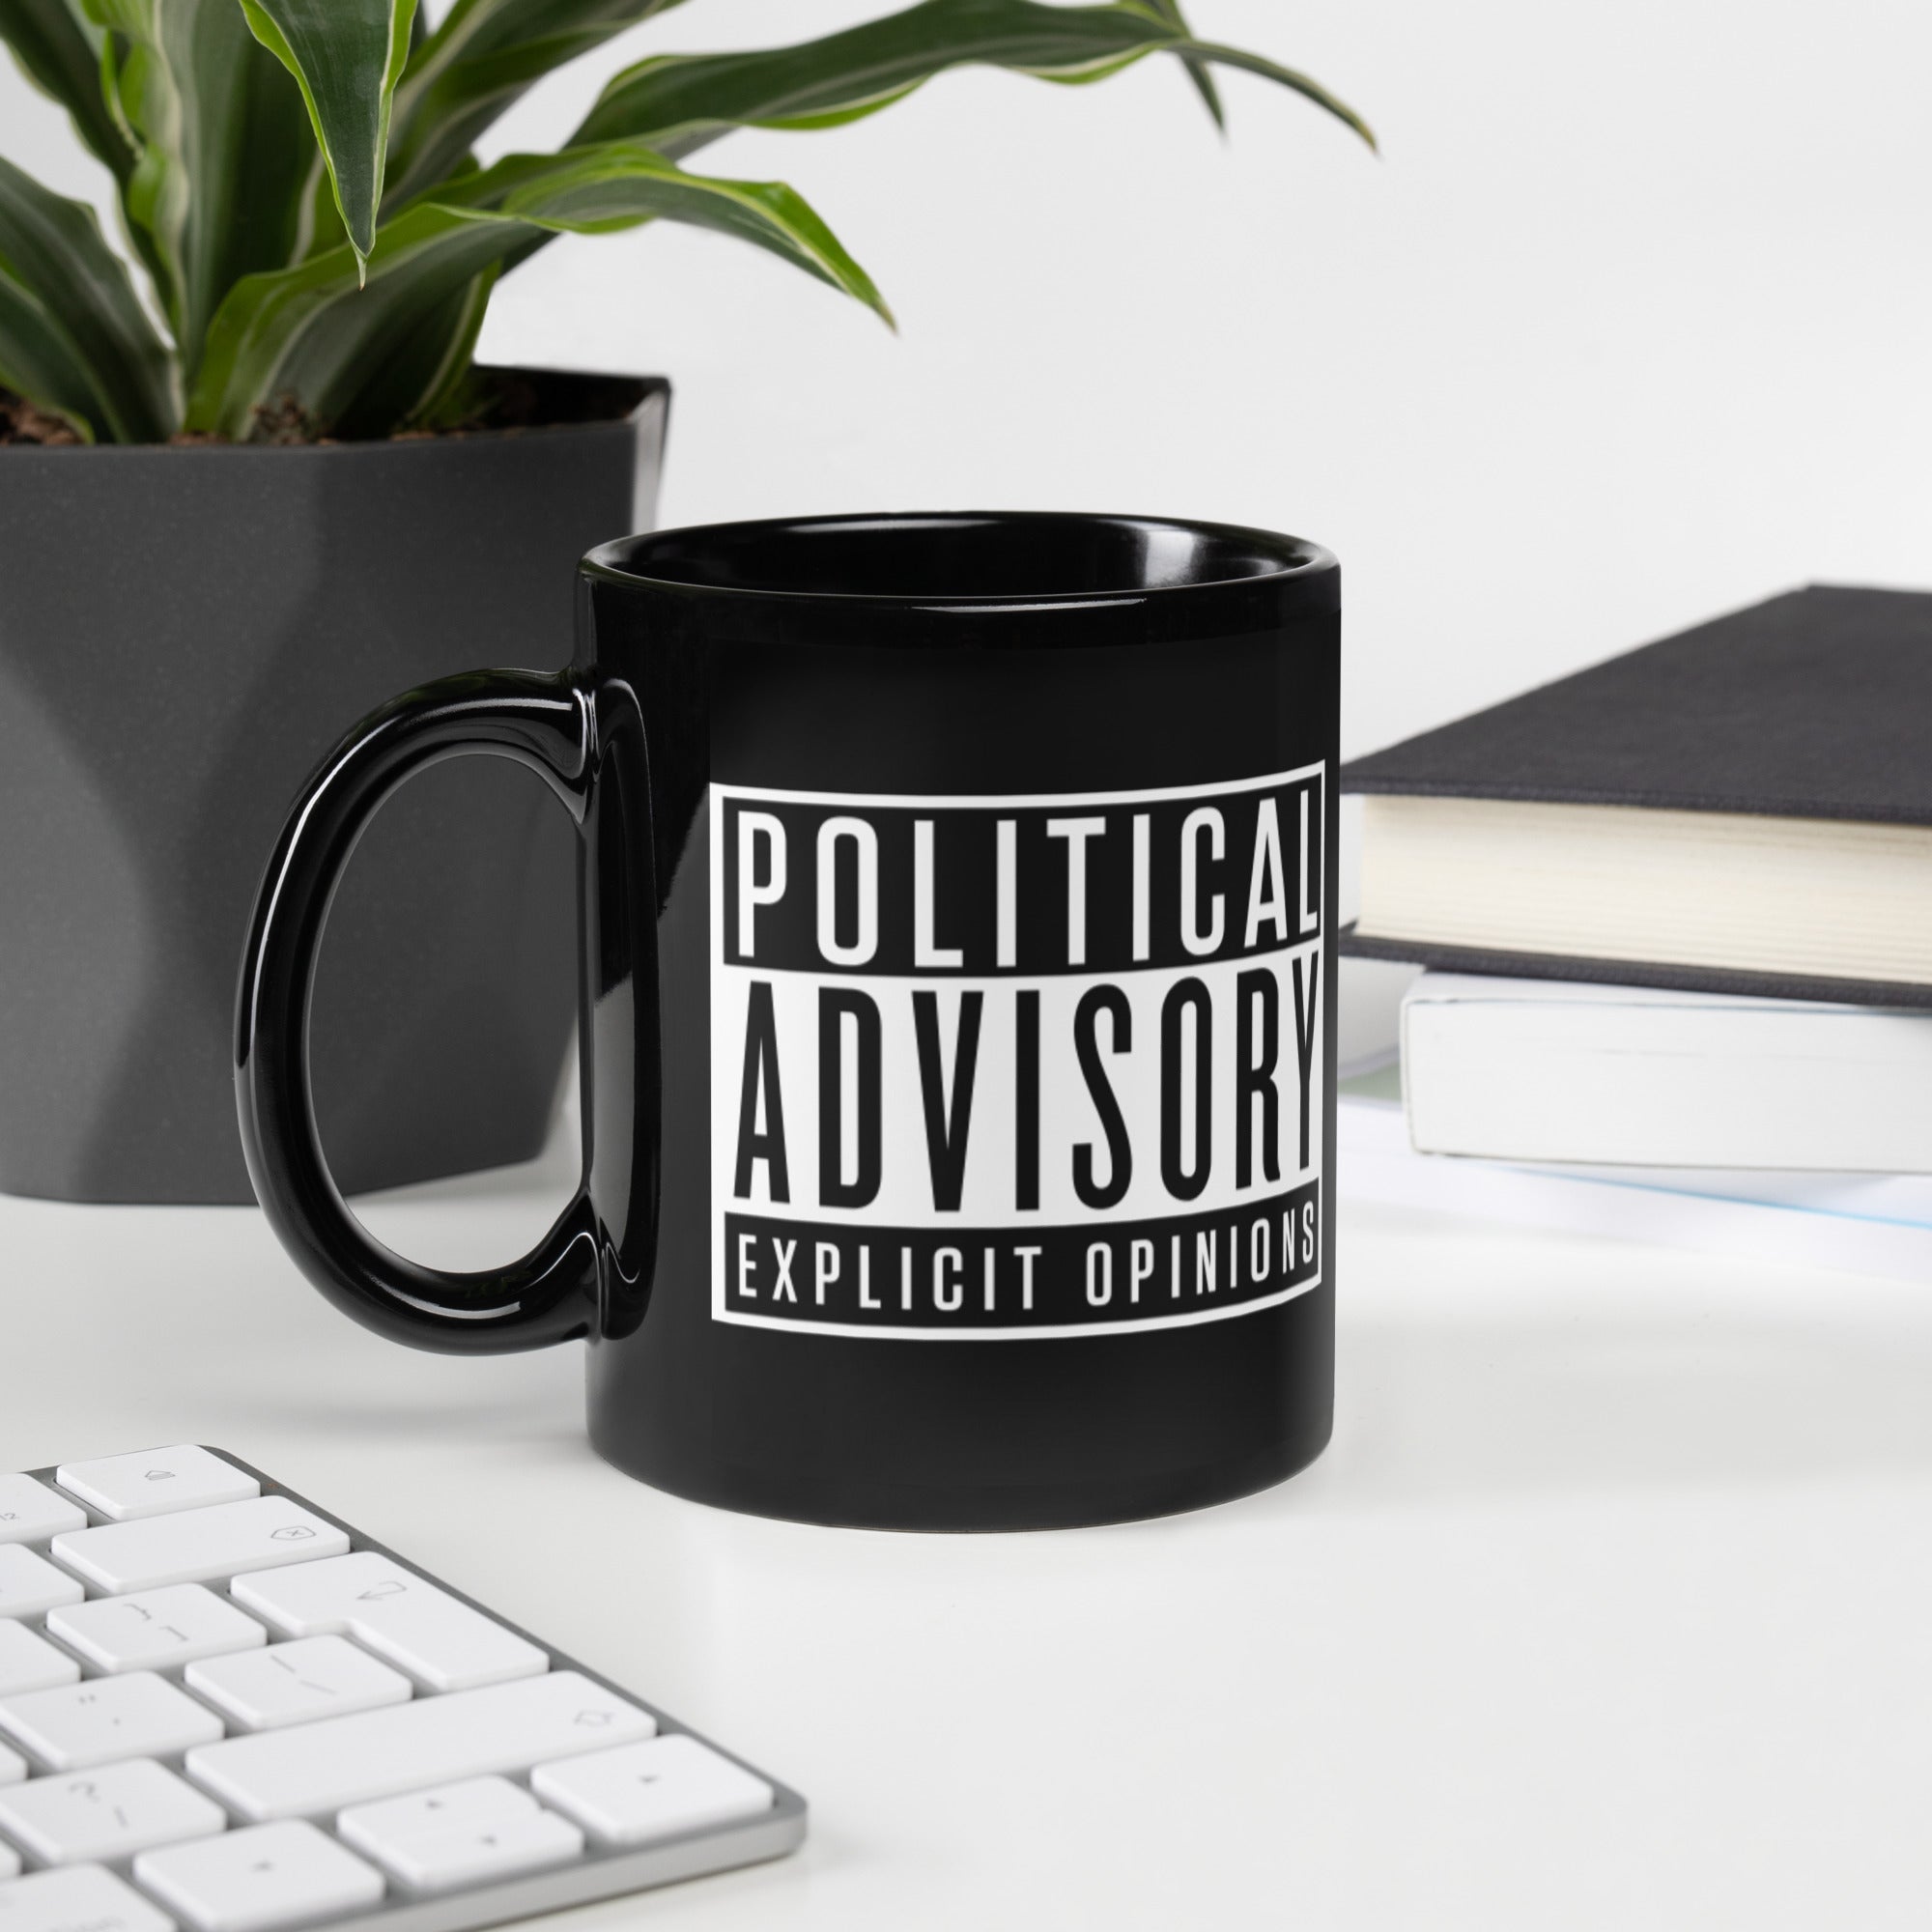 Political Advisory Explicit Opinions Mug